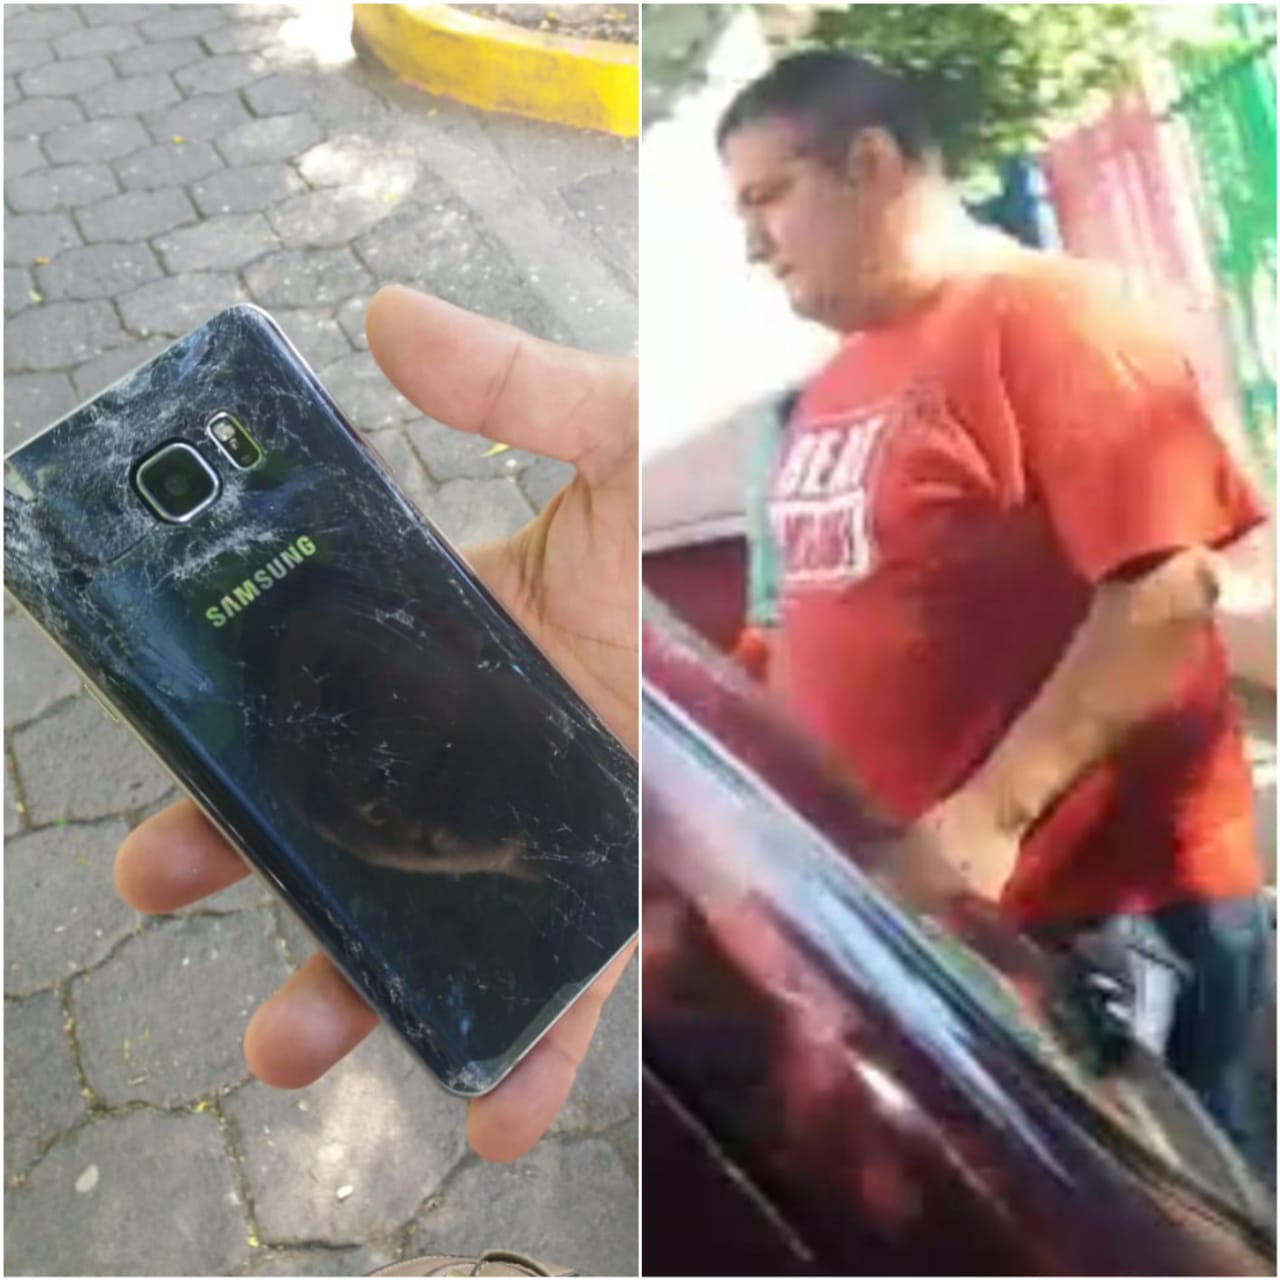 Policía vestido de civil arrebata y quiebra el teléfono al camarógrafo y periodista, Bryan Zeledón de NotimaTV